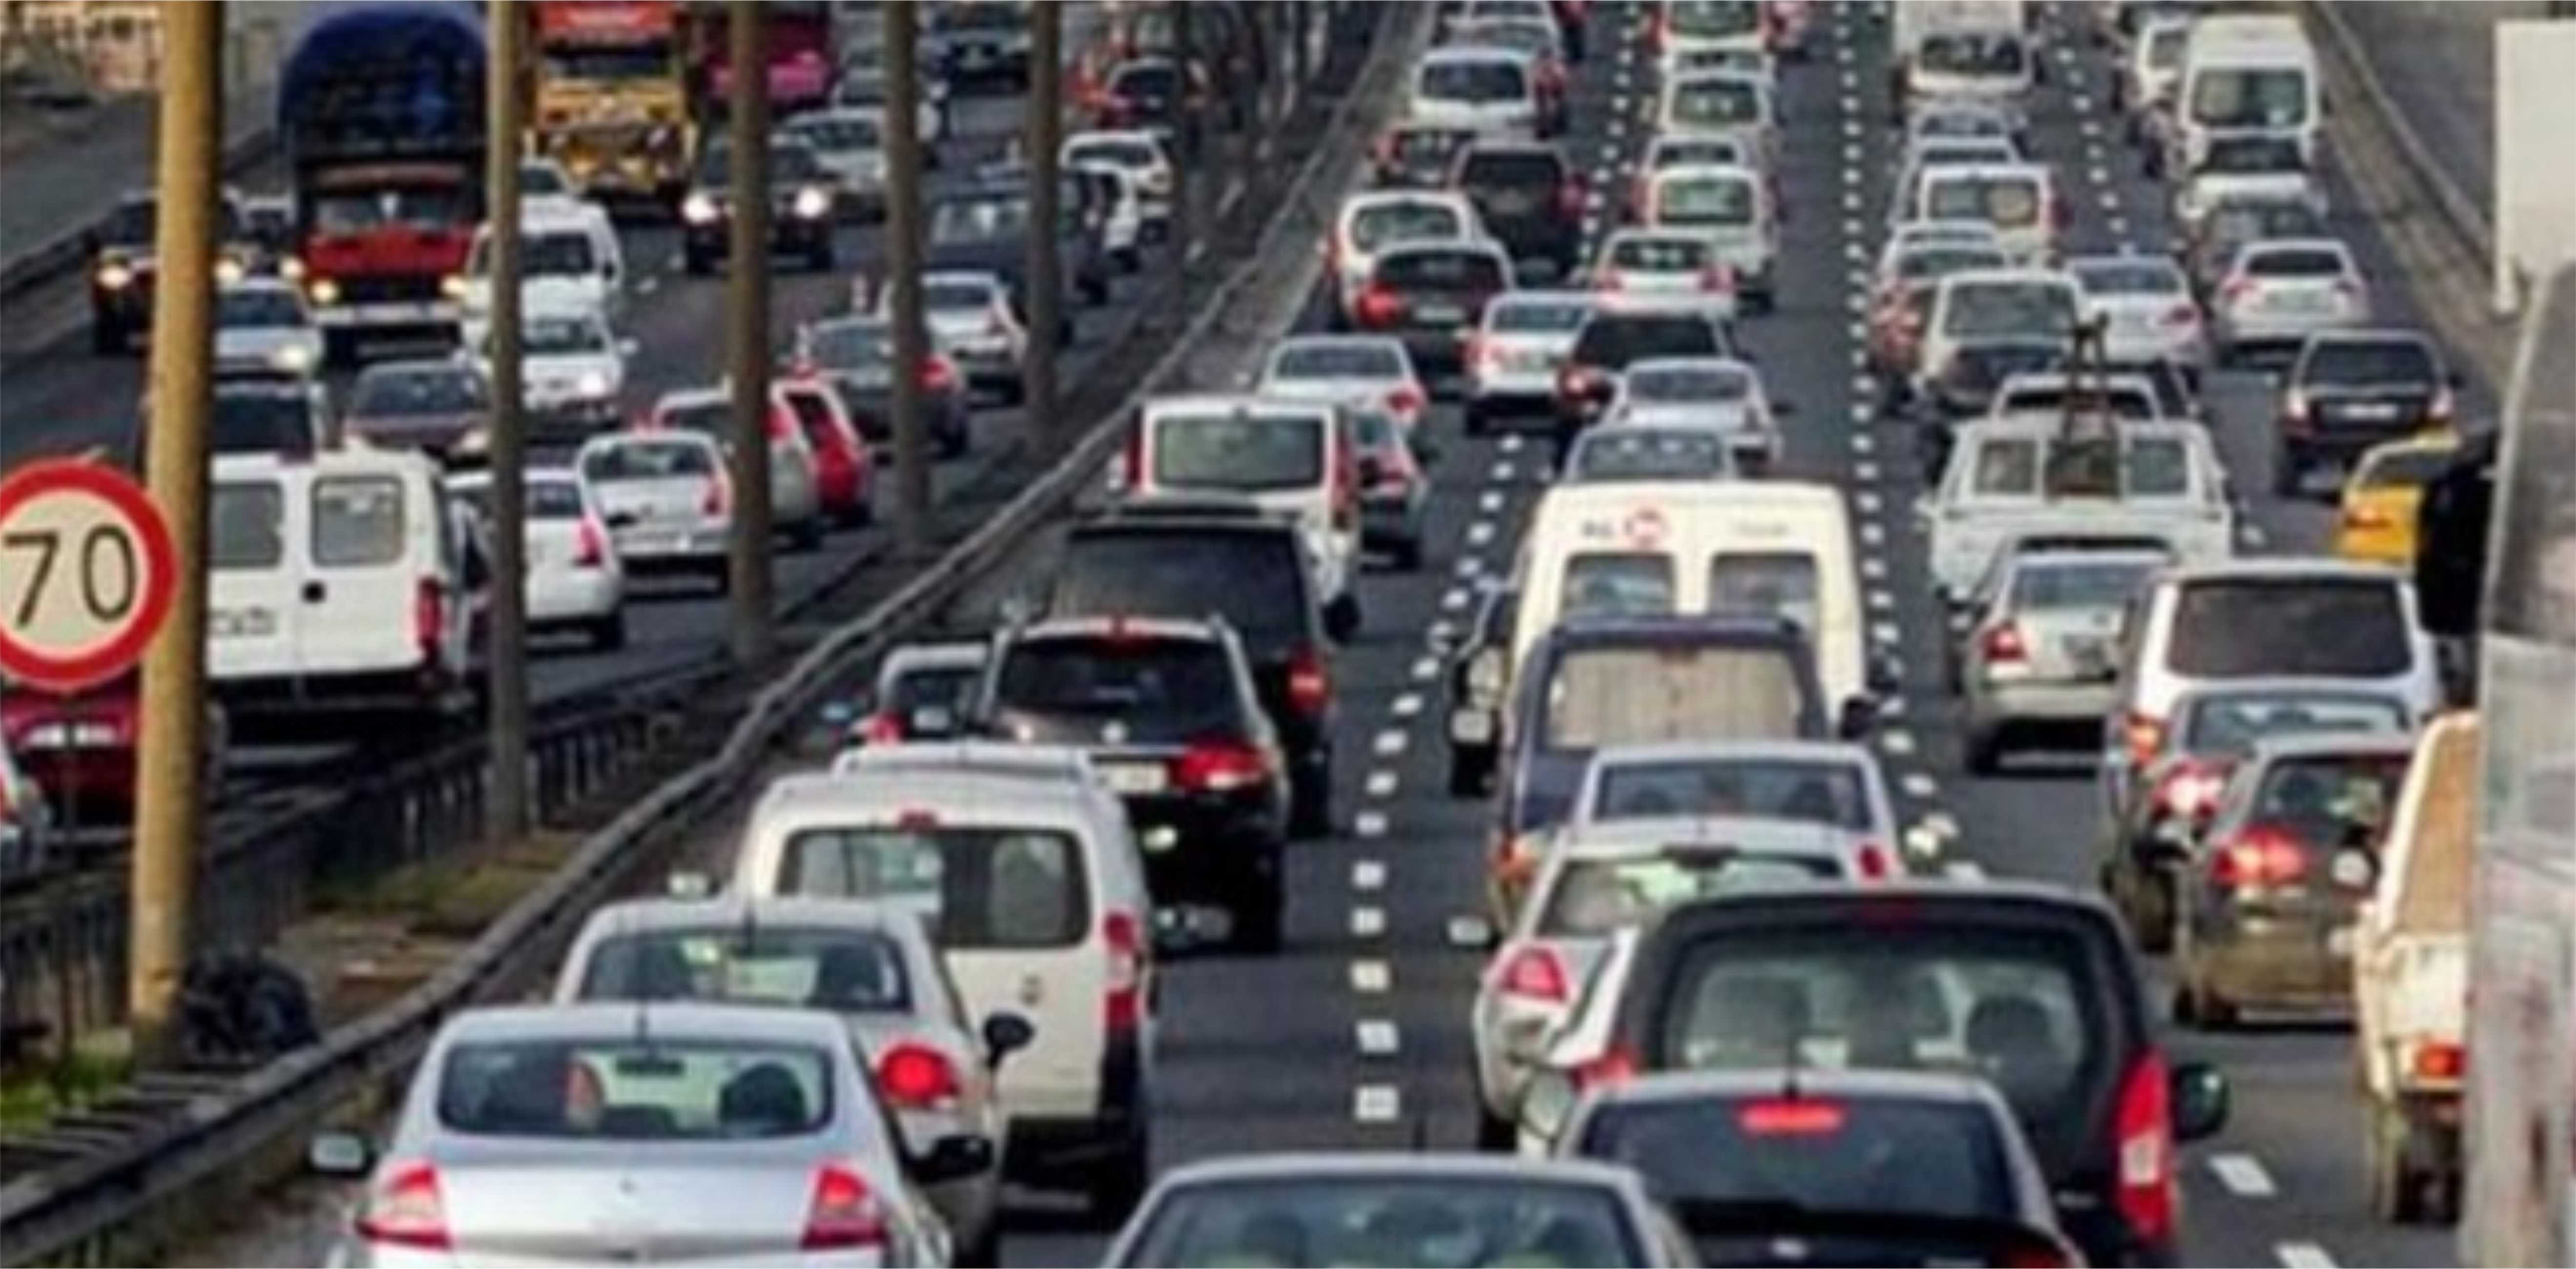 10 bin 600 sürücüye şok: Testi geçemeyen…